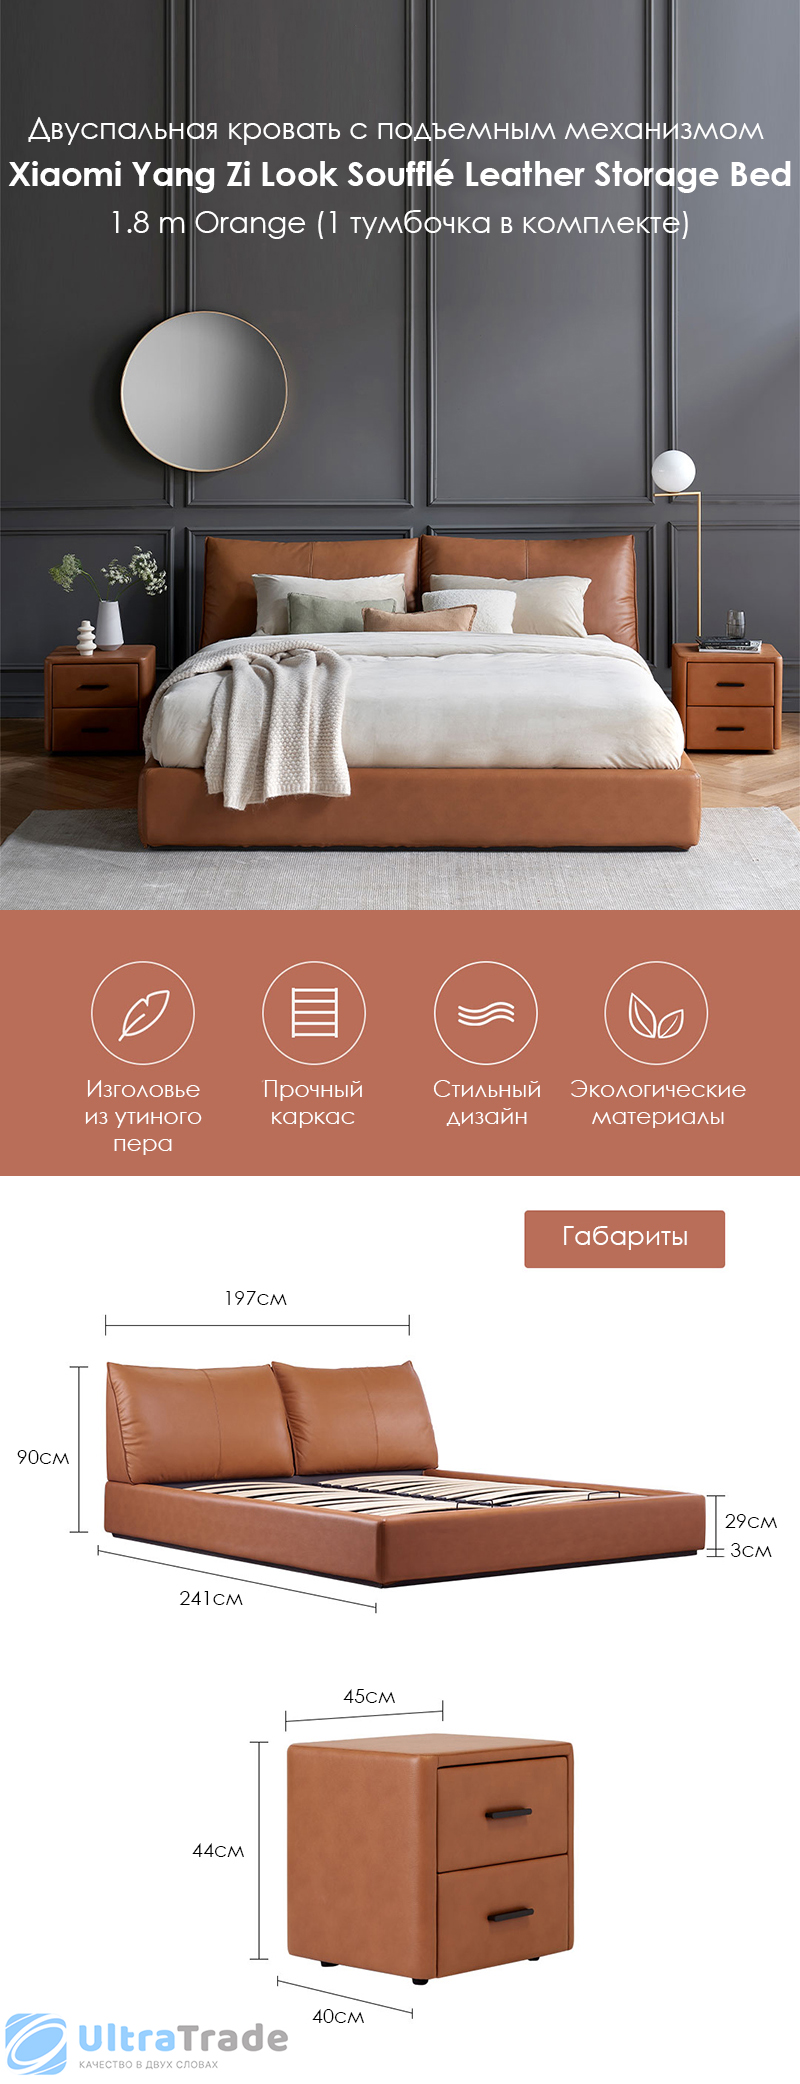 Двуспальная кровать с подъемным механизмом Xiaomi Yang Zi Look Soufflé Leather Storage Bed Set 1.8 m Orange (1 тумбочка в комплекте)